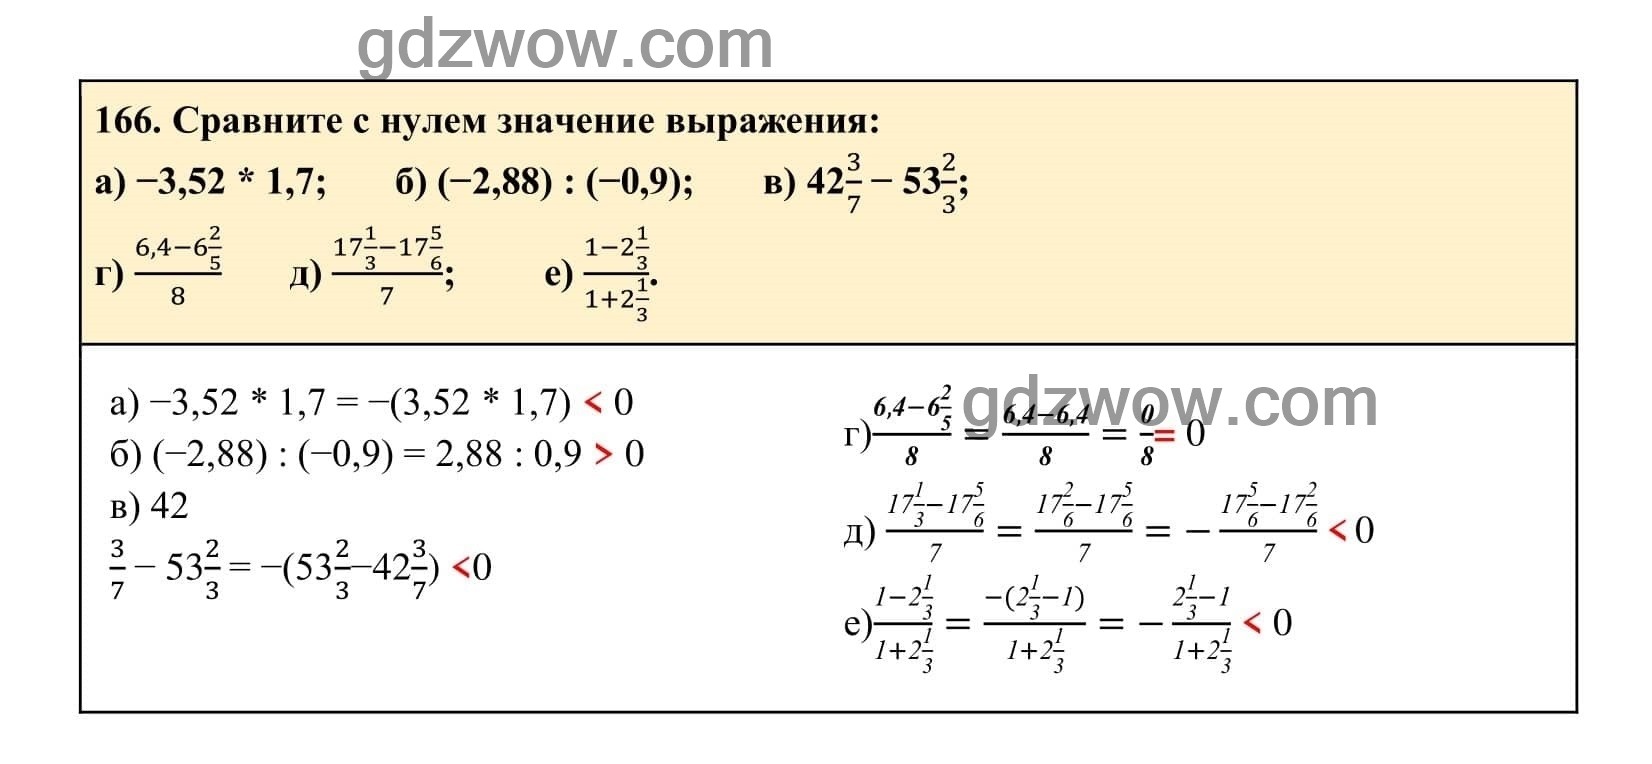 Упражнение 166 - ГДЗ по Алгебре 7 класс Учебник Макарычев (решебник) - GDZwow